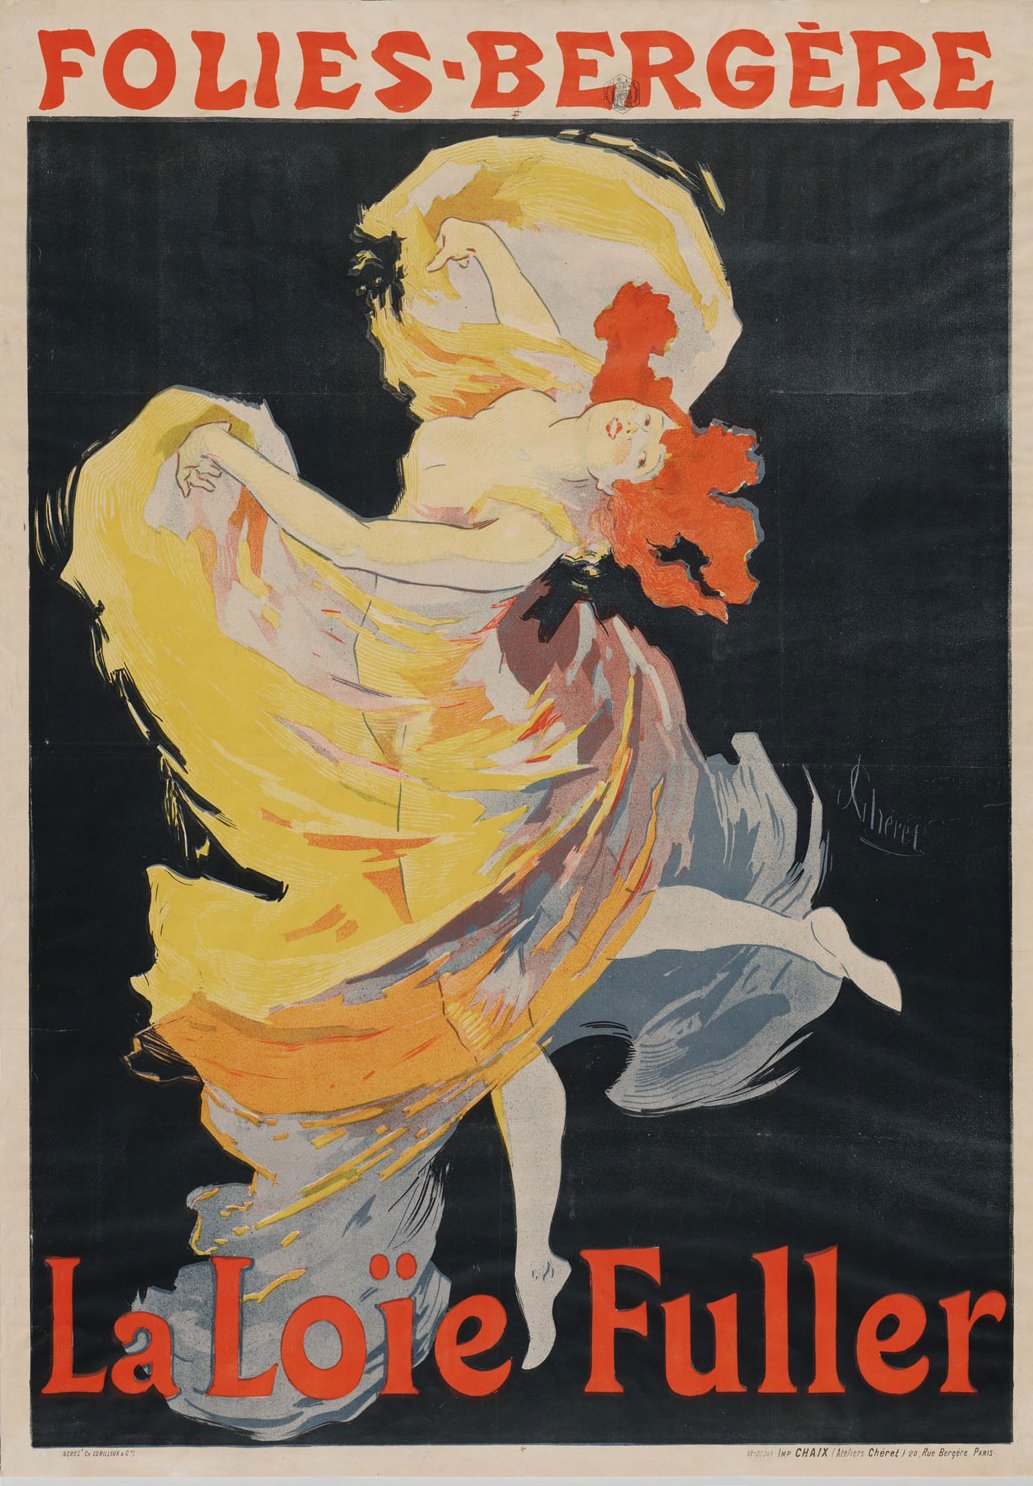 Jules Chéret « La Loïe Fuller », Folies-Bergère, 1893